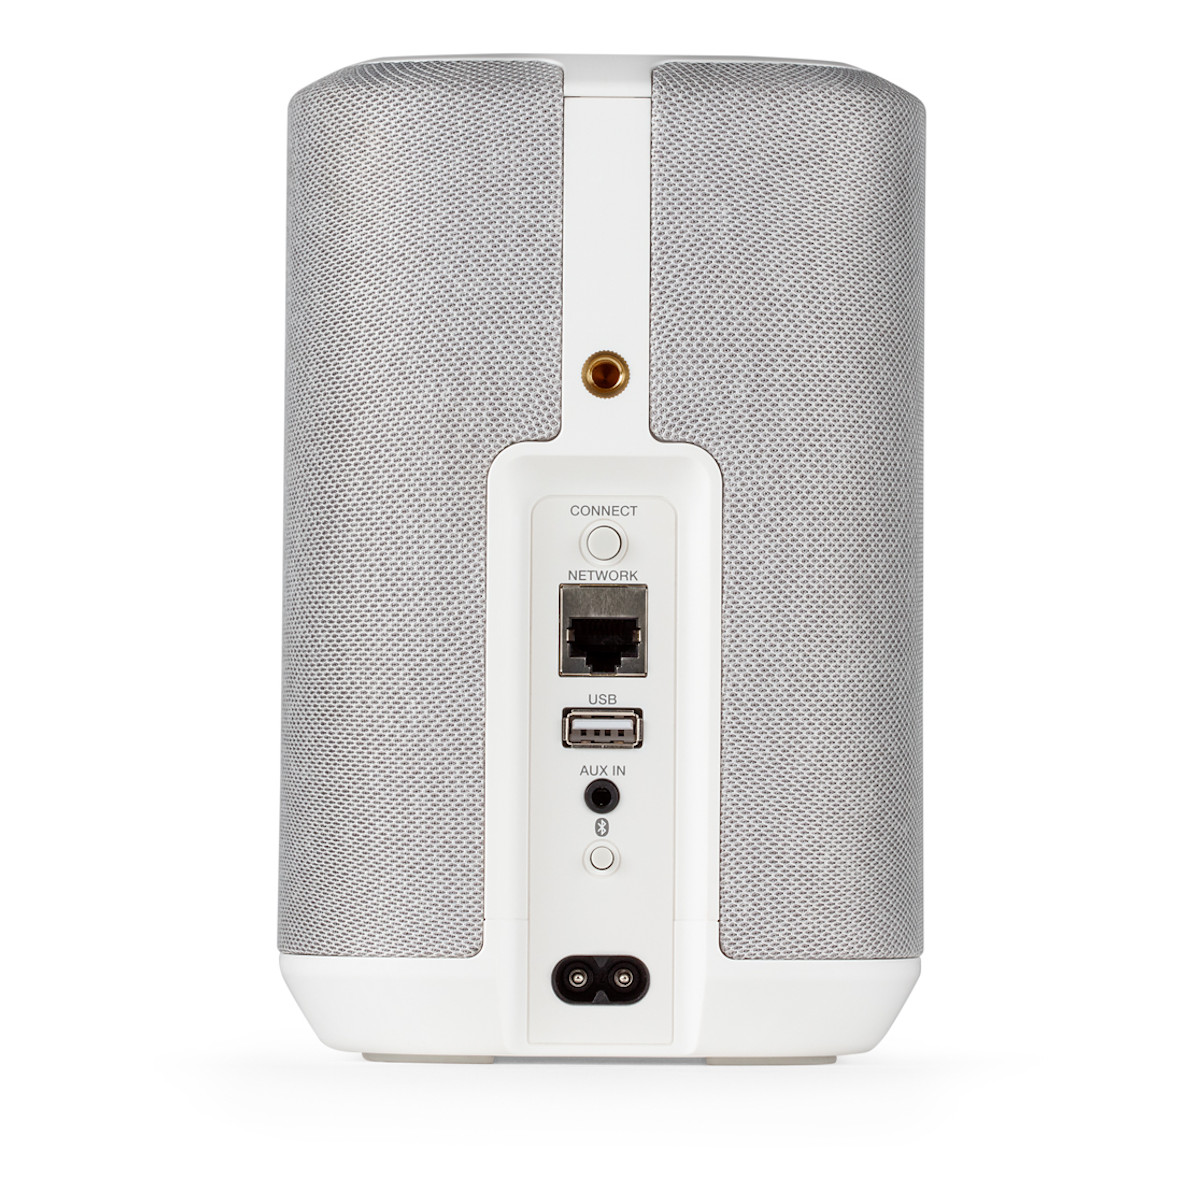 Denon+Home+150+Wireless+Speaker+-+White for sale online | eBay